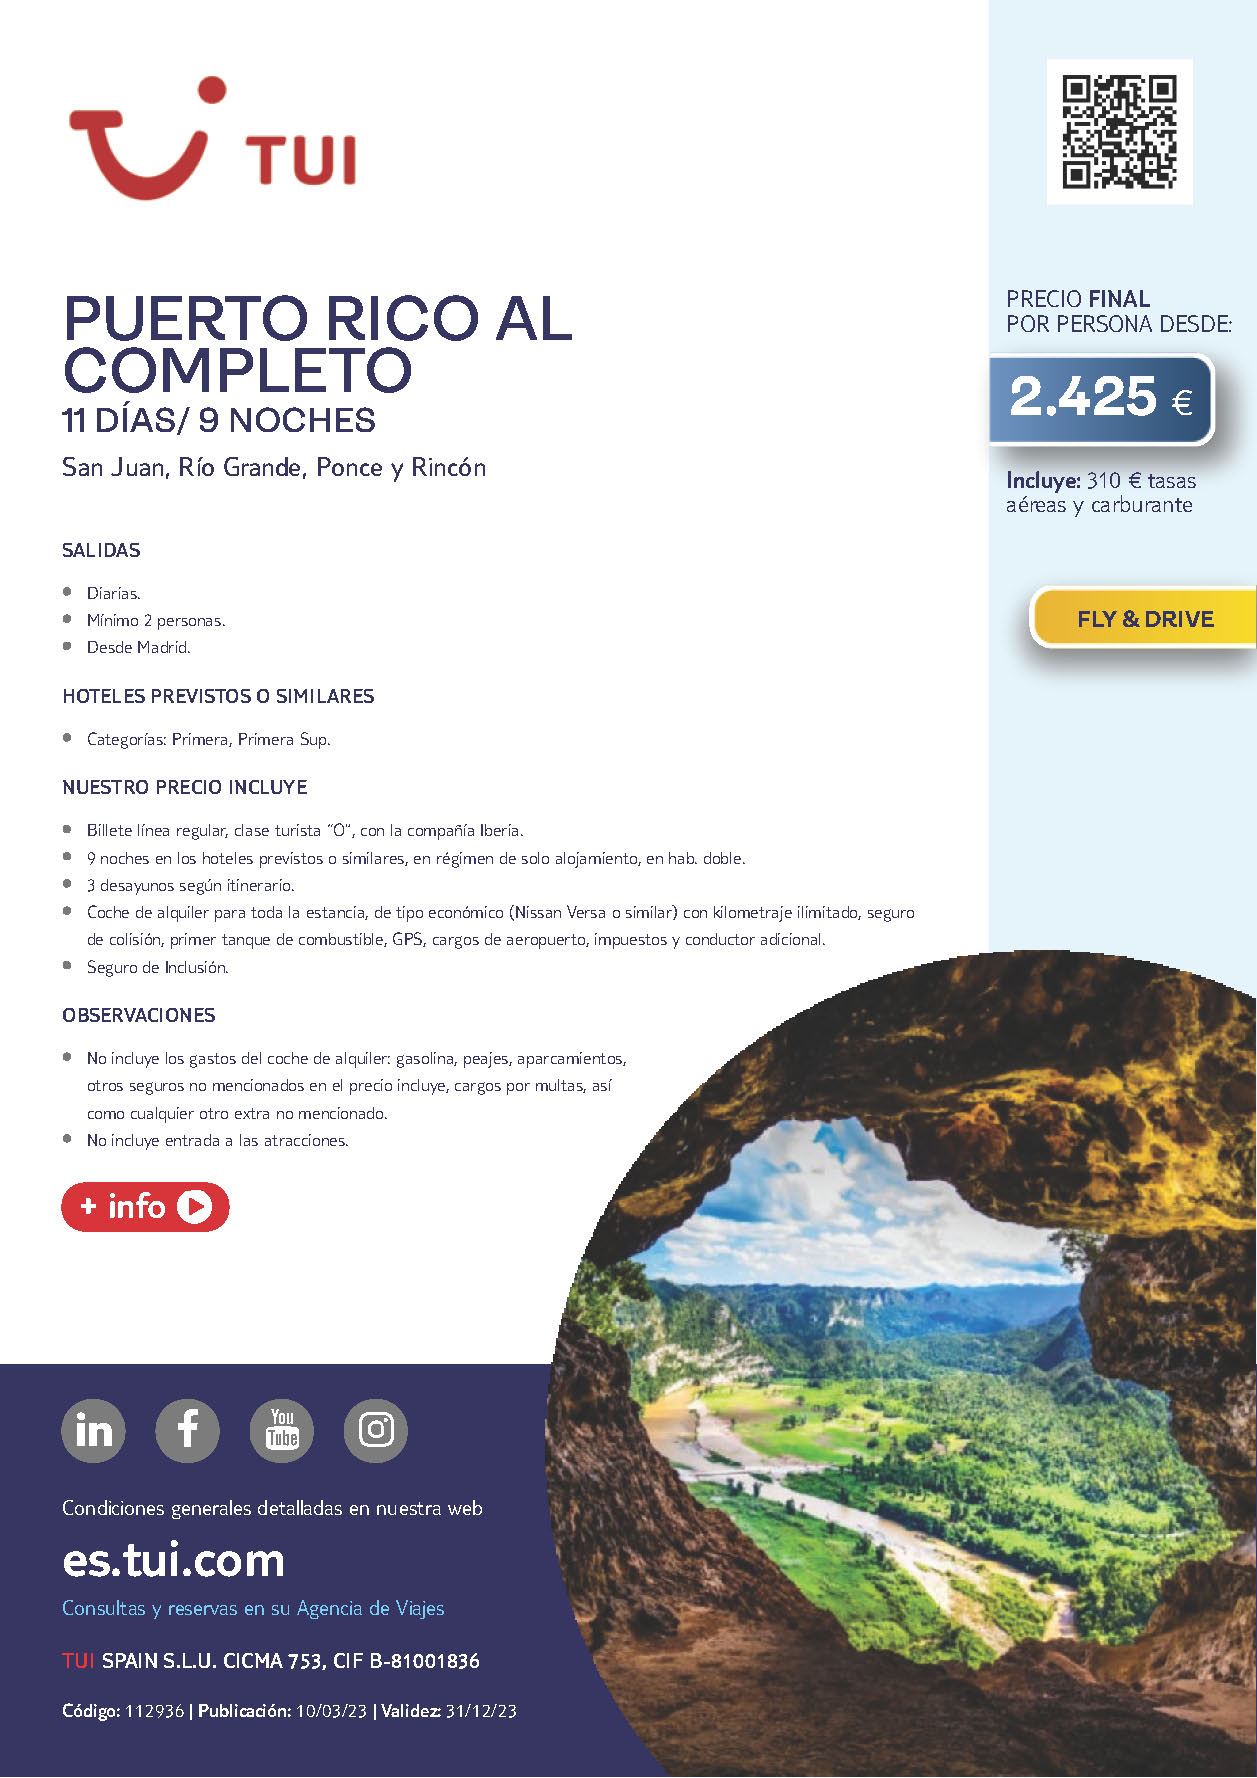 Oferta TUI Puerto Rico al Completo Fly and Drive 11 dias salidas 2023 en vuelo directo desde Madrid vuelos Iberia